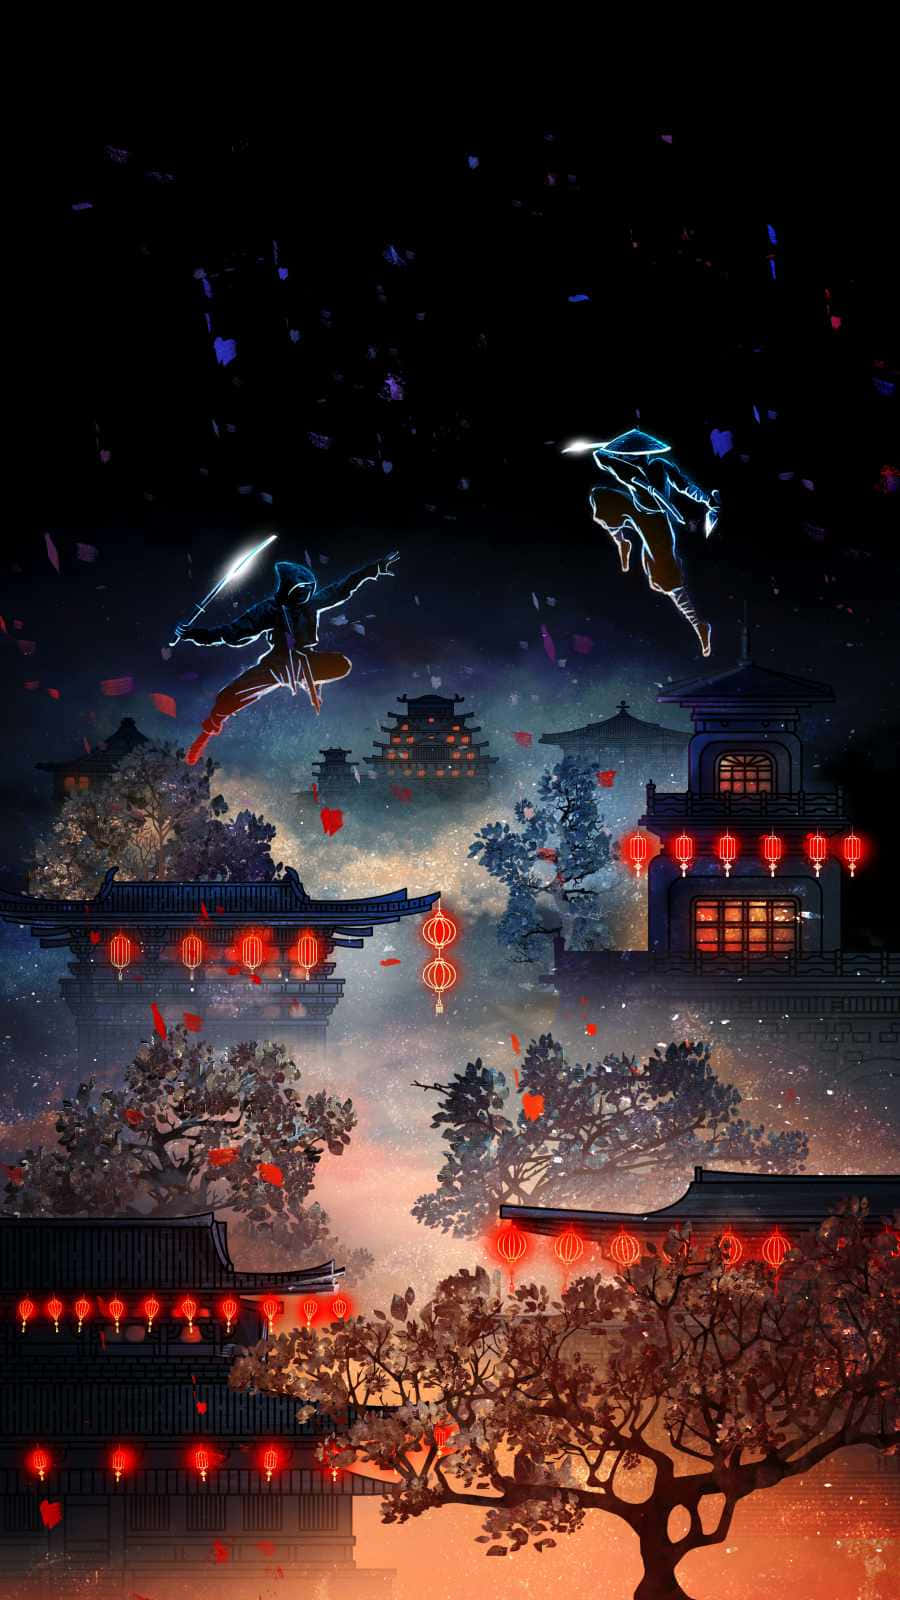 A Samurai Swordsman Flying Over A City With Lanterns